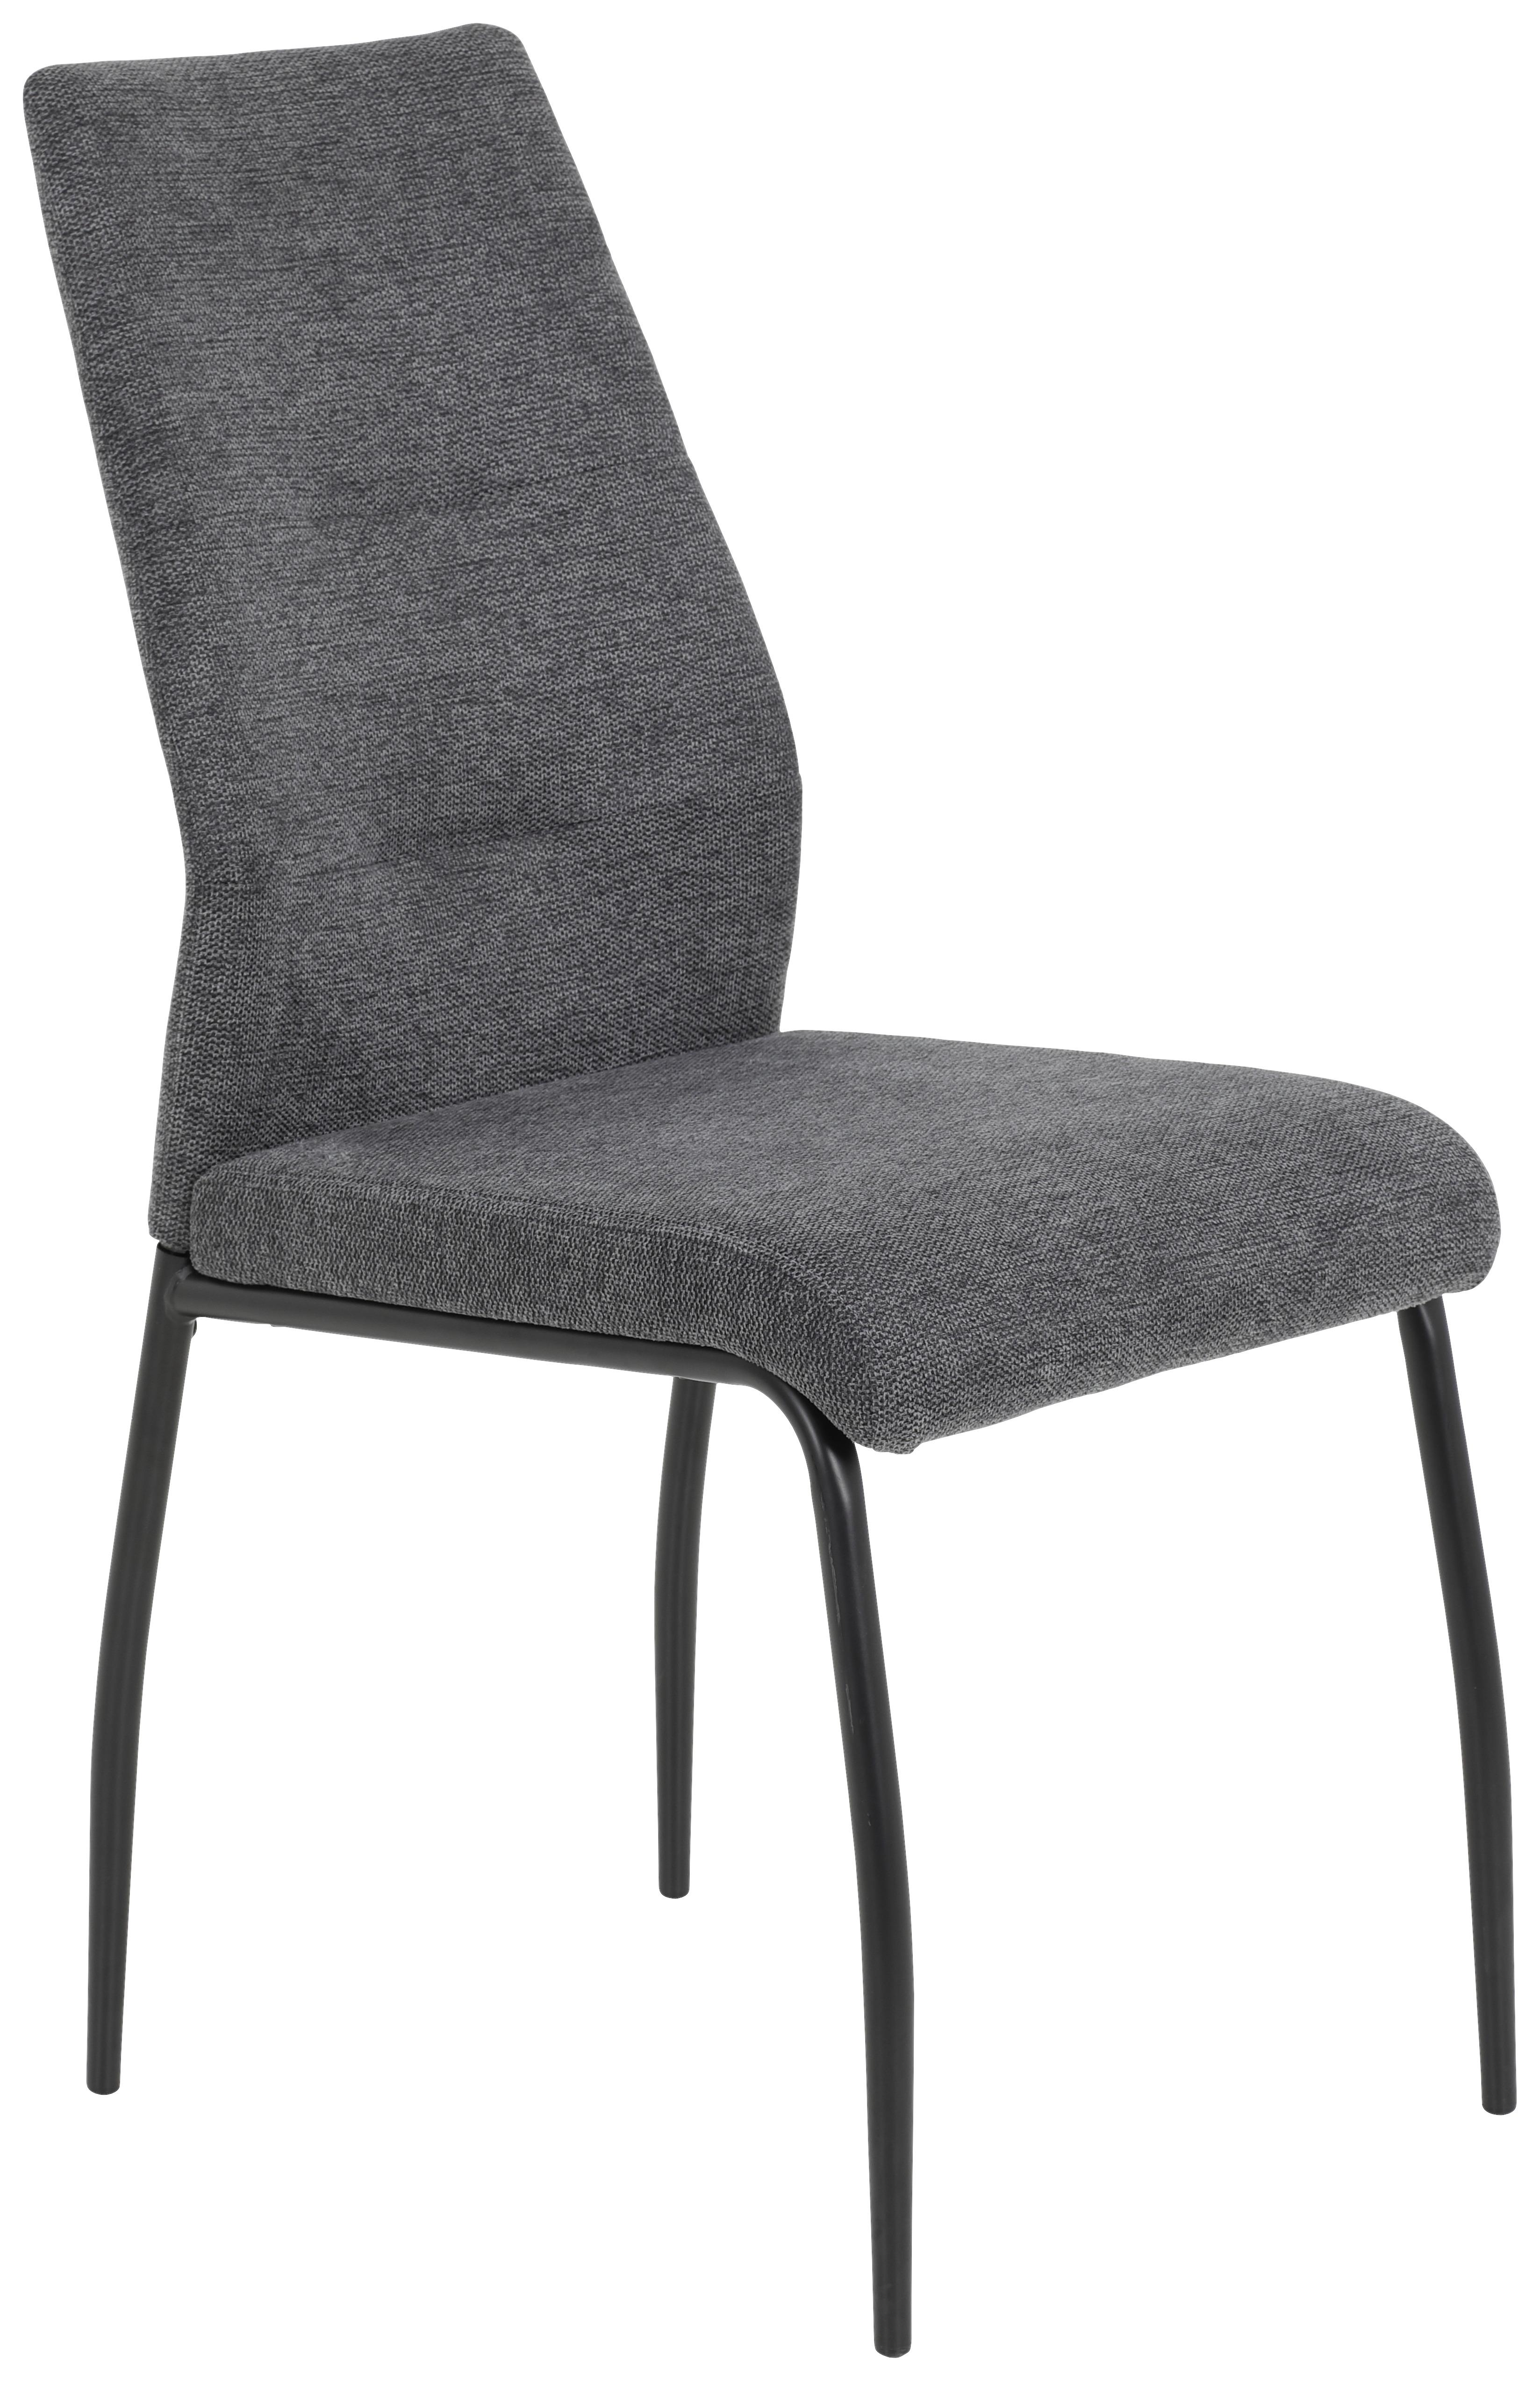 Stuhl in Anthrazit/Schwarz - Anthrazit/Schwarz, MODERN, Textil/Metall (43/93/59cm) - Modern Living